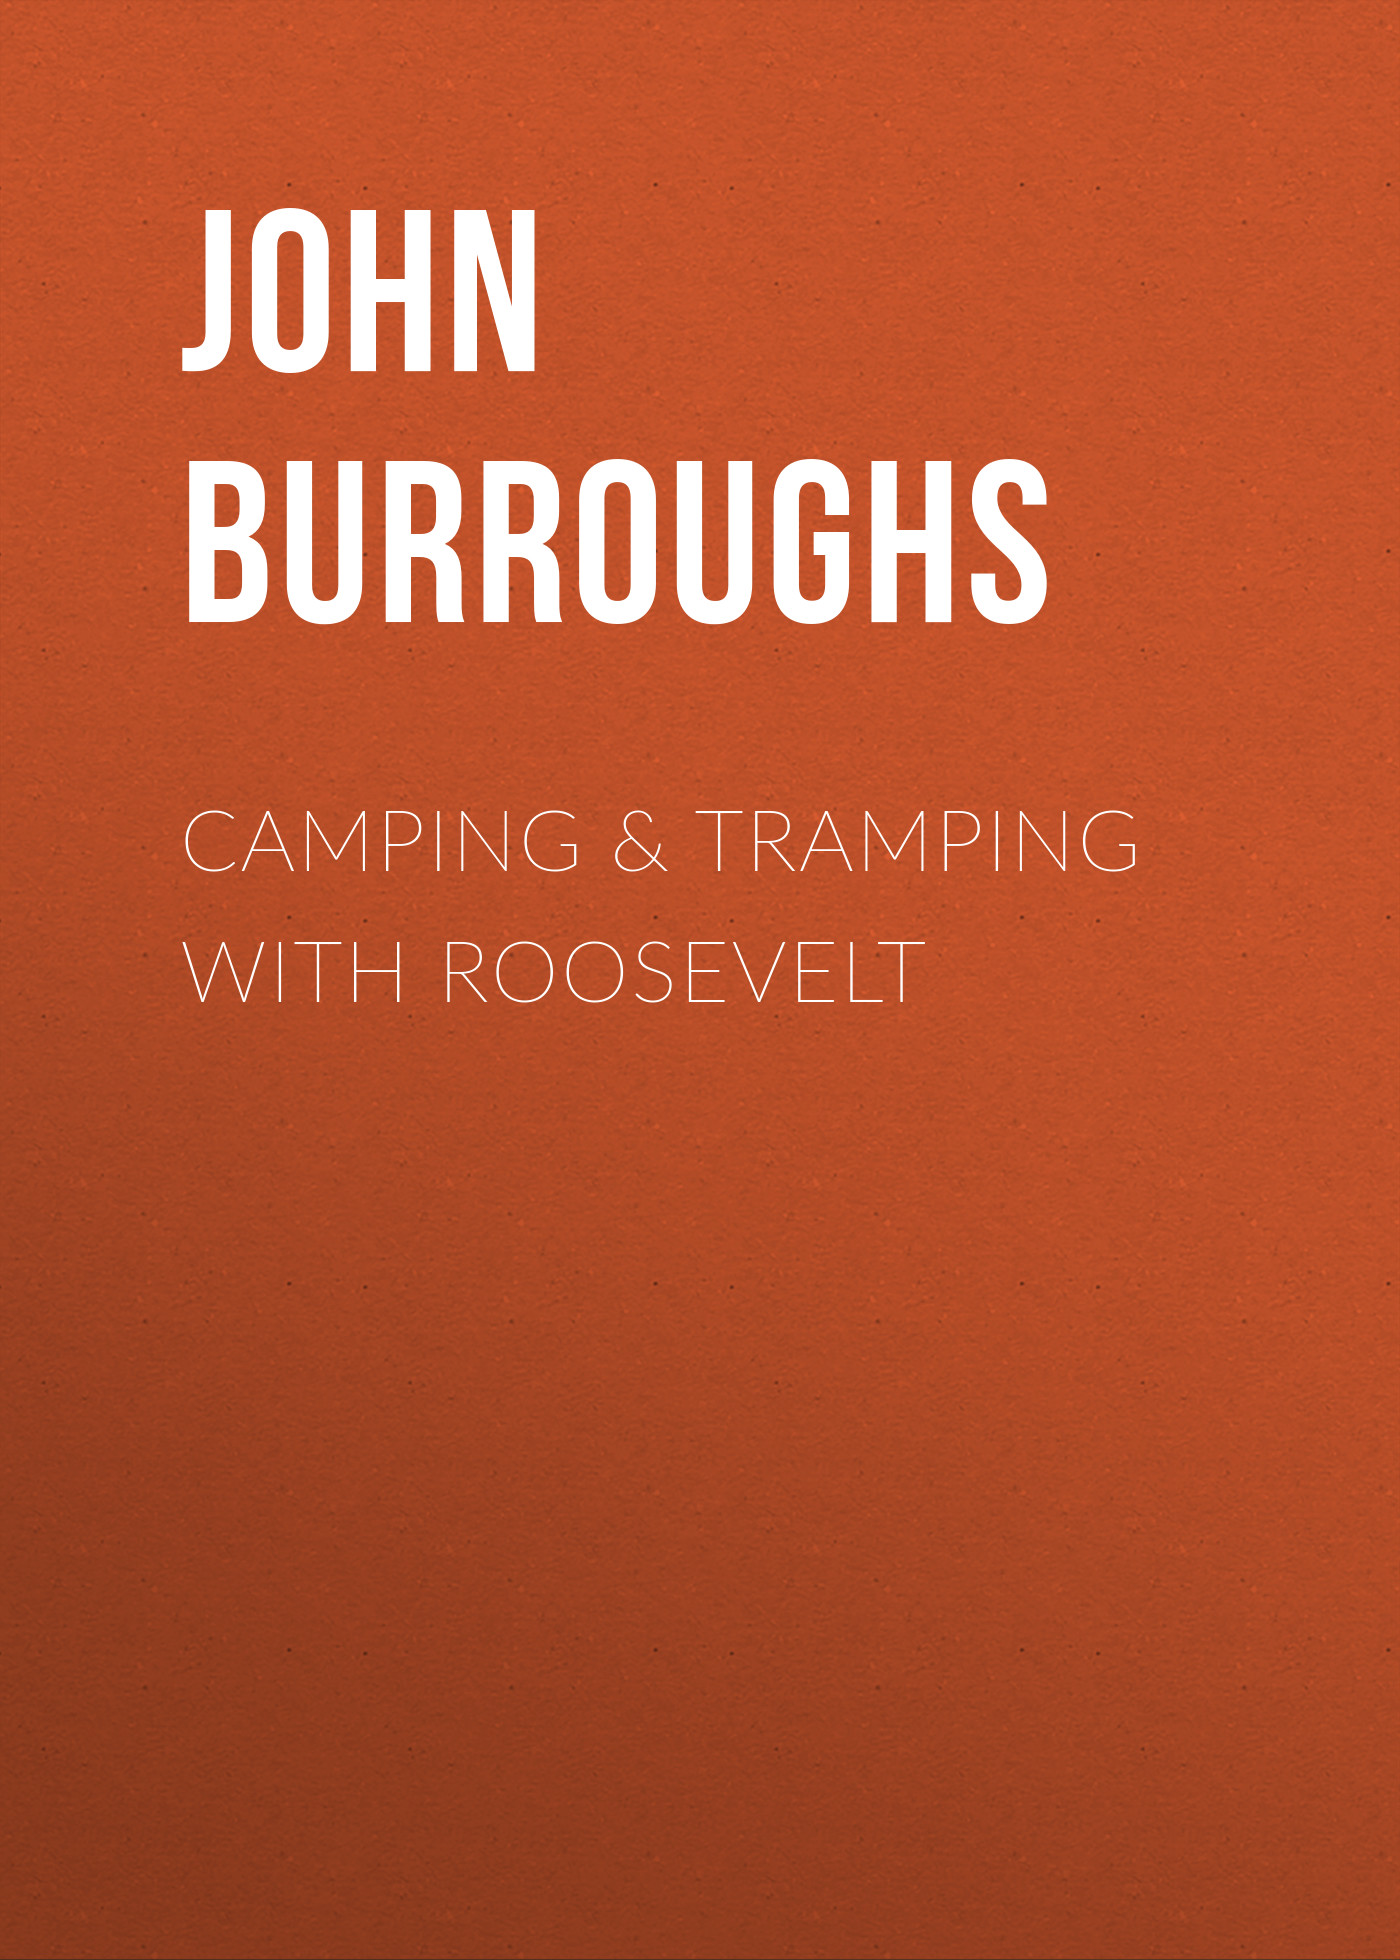 Книга Camping & Tramping with Roosevelt из серии , созданная John Burroughs, может относится к жанру Зарубежная старинная литература, Зарубежная классика. Стоимость электронной книги Camping & Tramping with Roosevelt с идентификатором 24171996 составляет 0.90 руб.